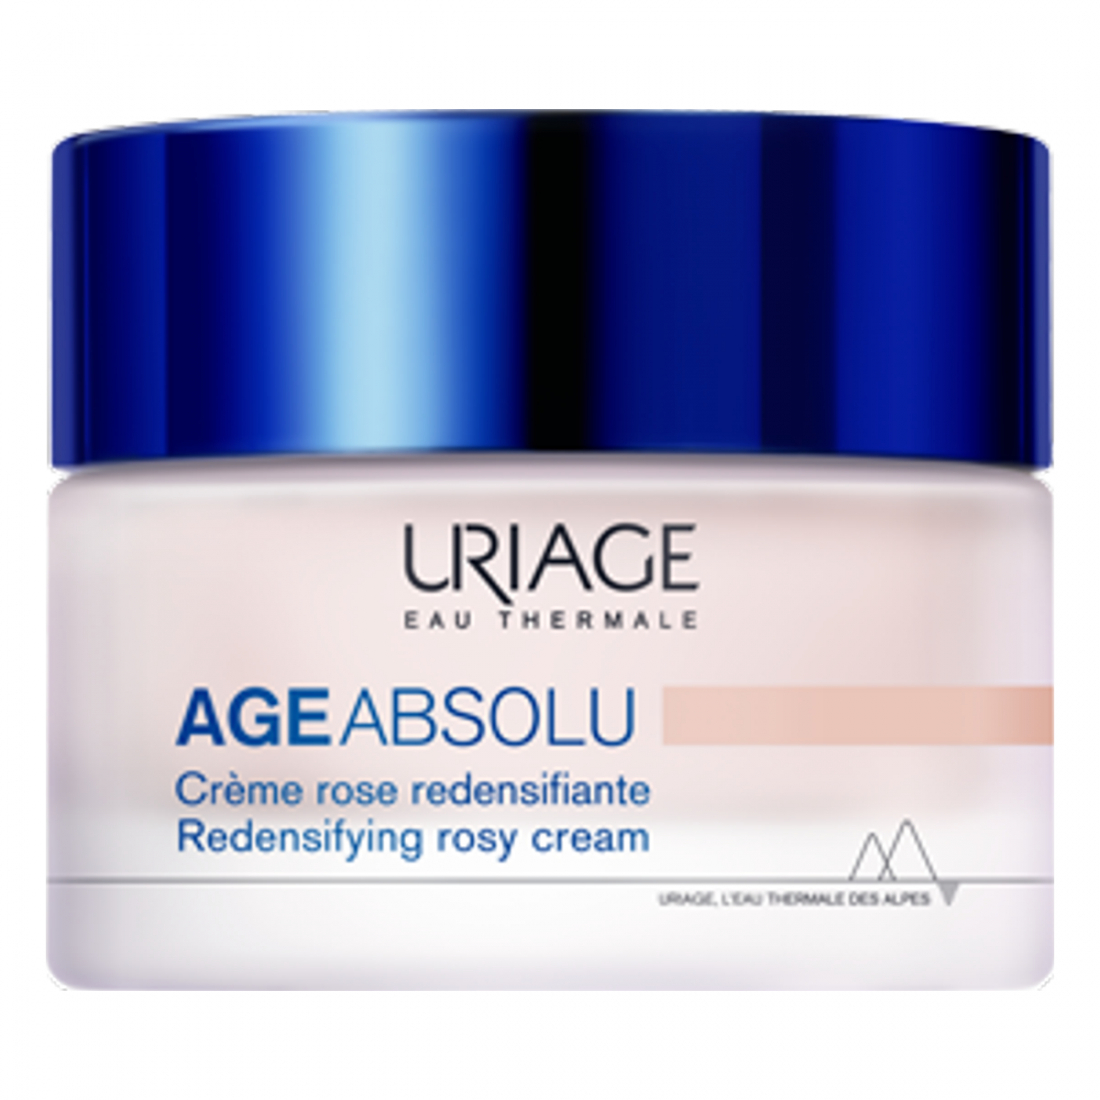 'Age Absolu Rose Redensifying' Anti-Aging Tagescreme - 50 ml